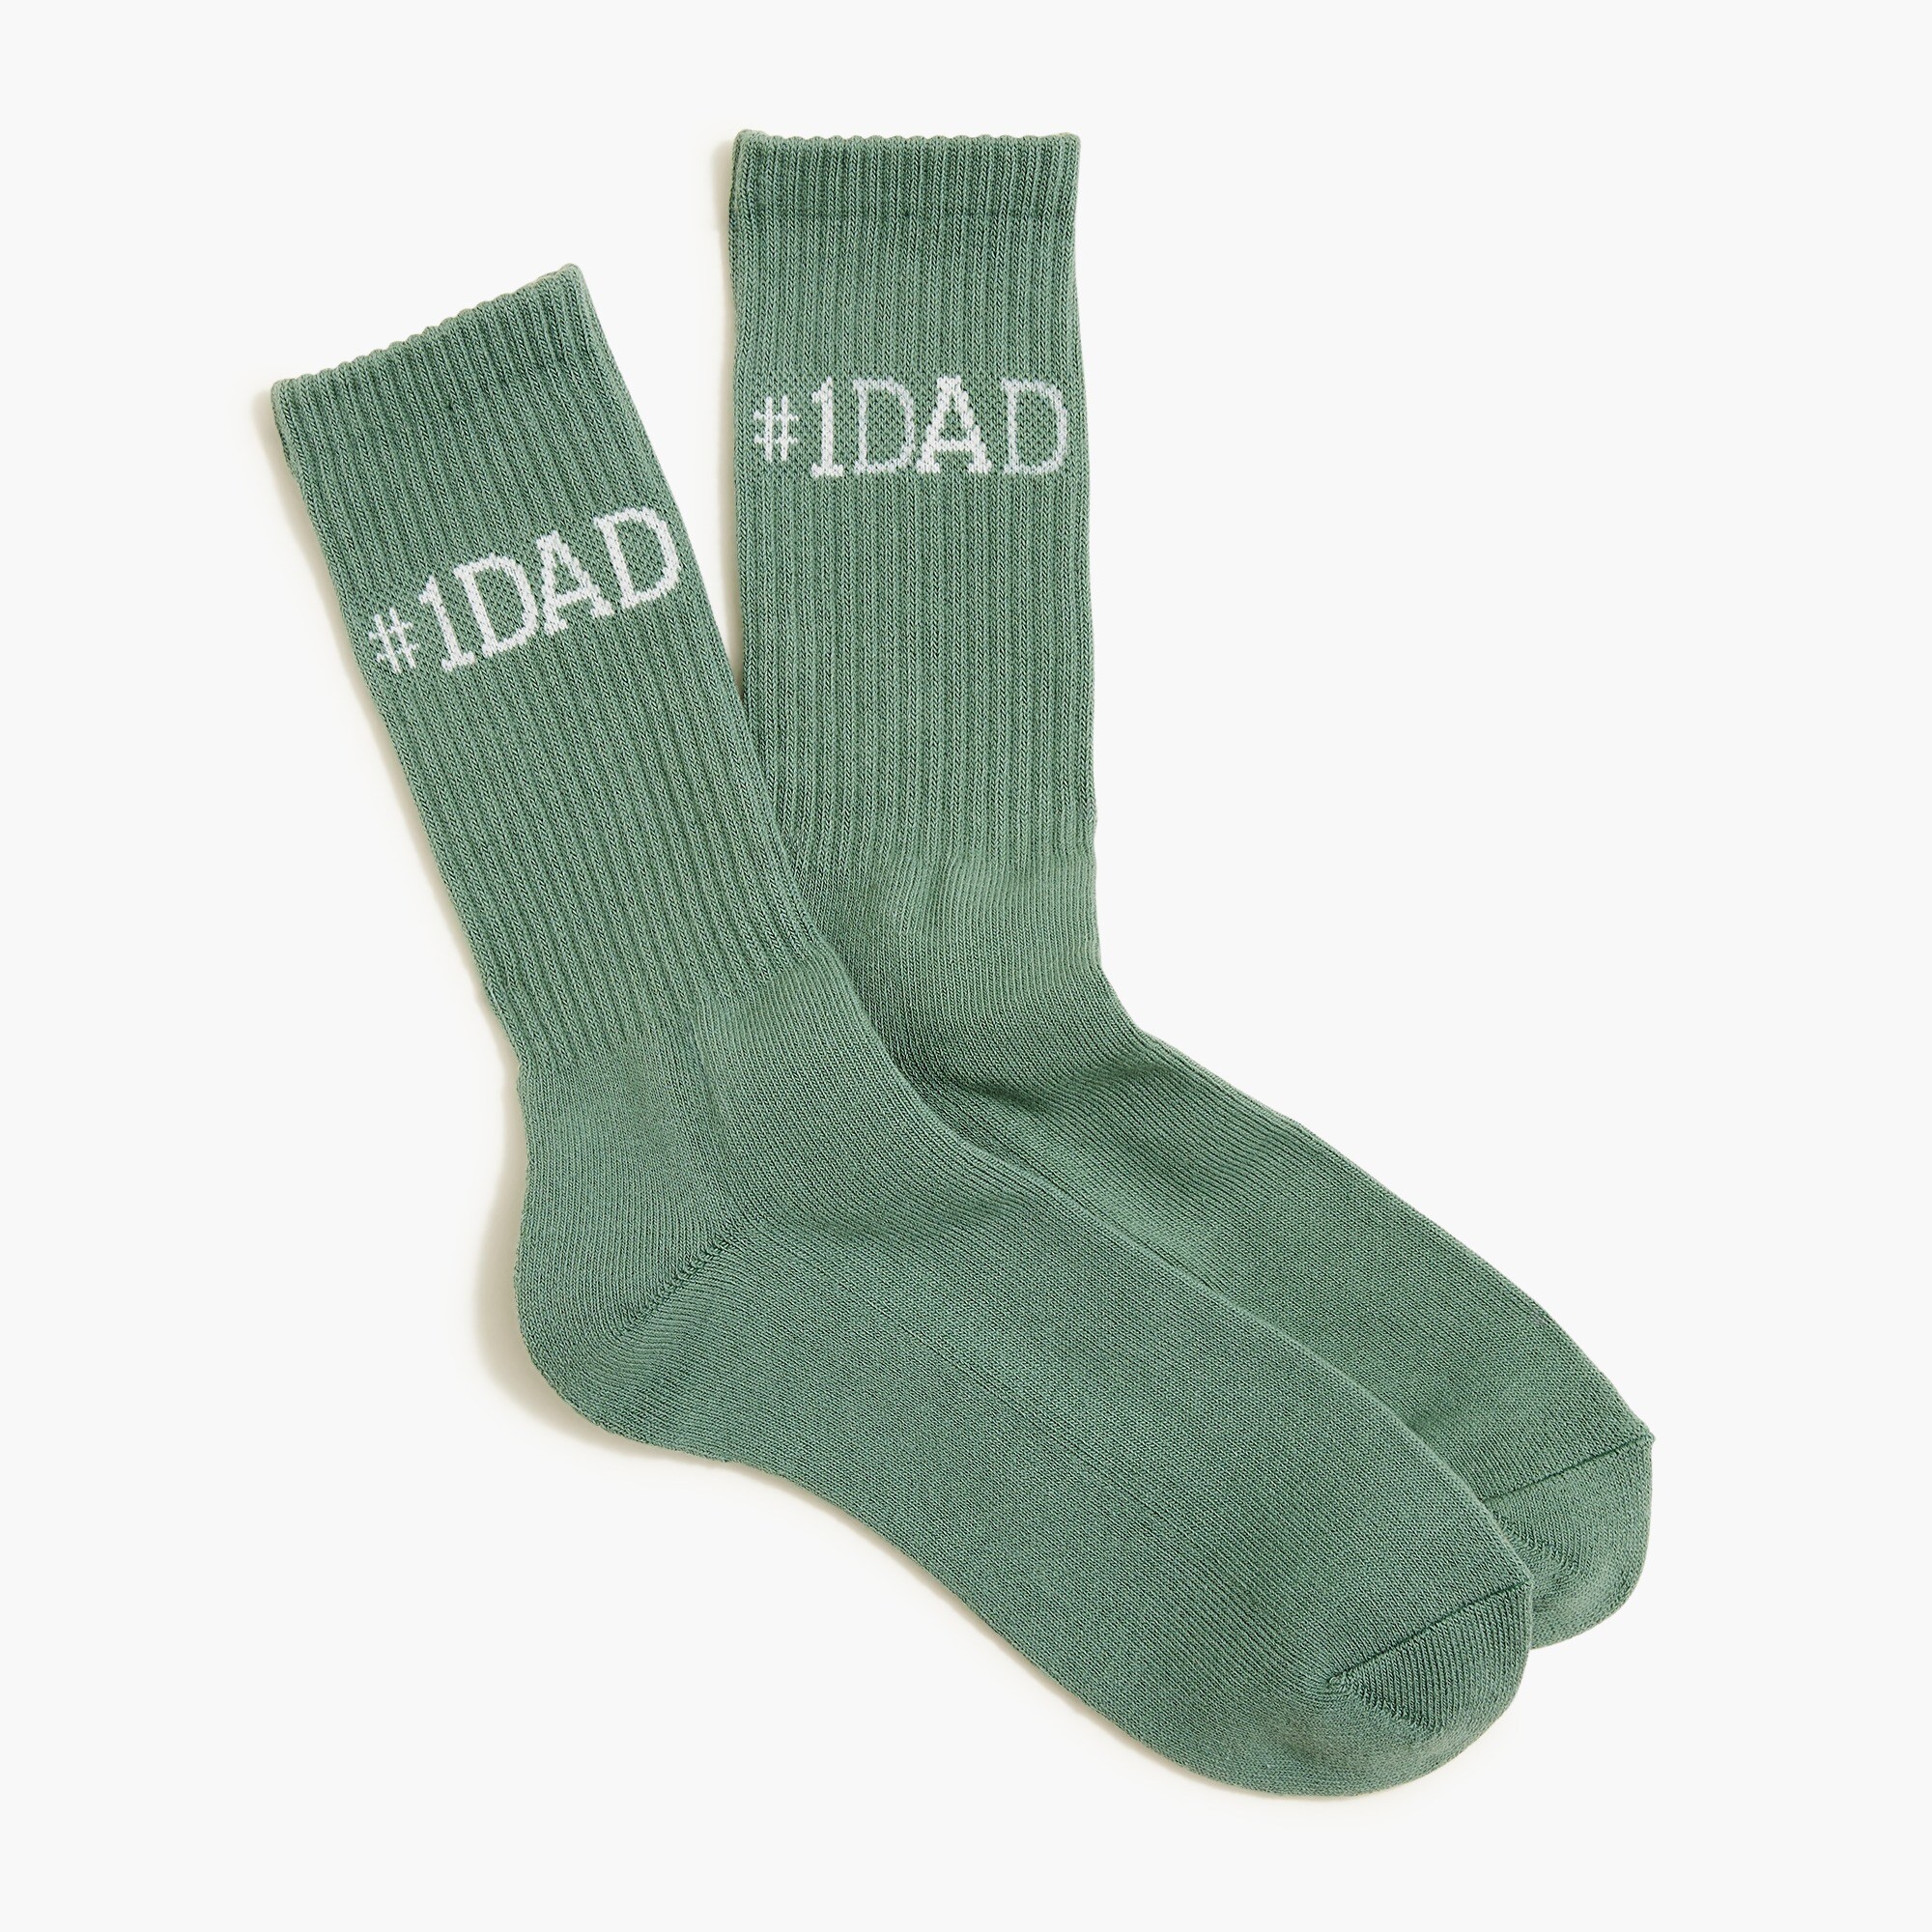 mens #1 Dad socks